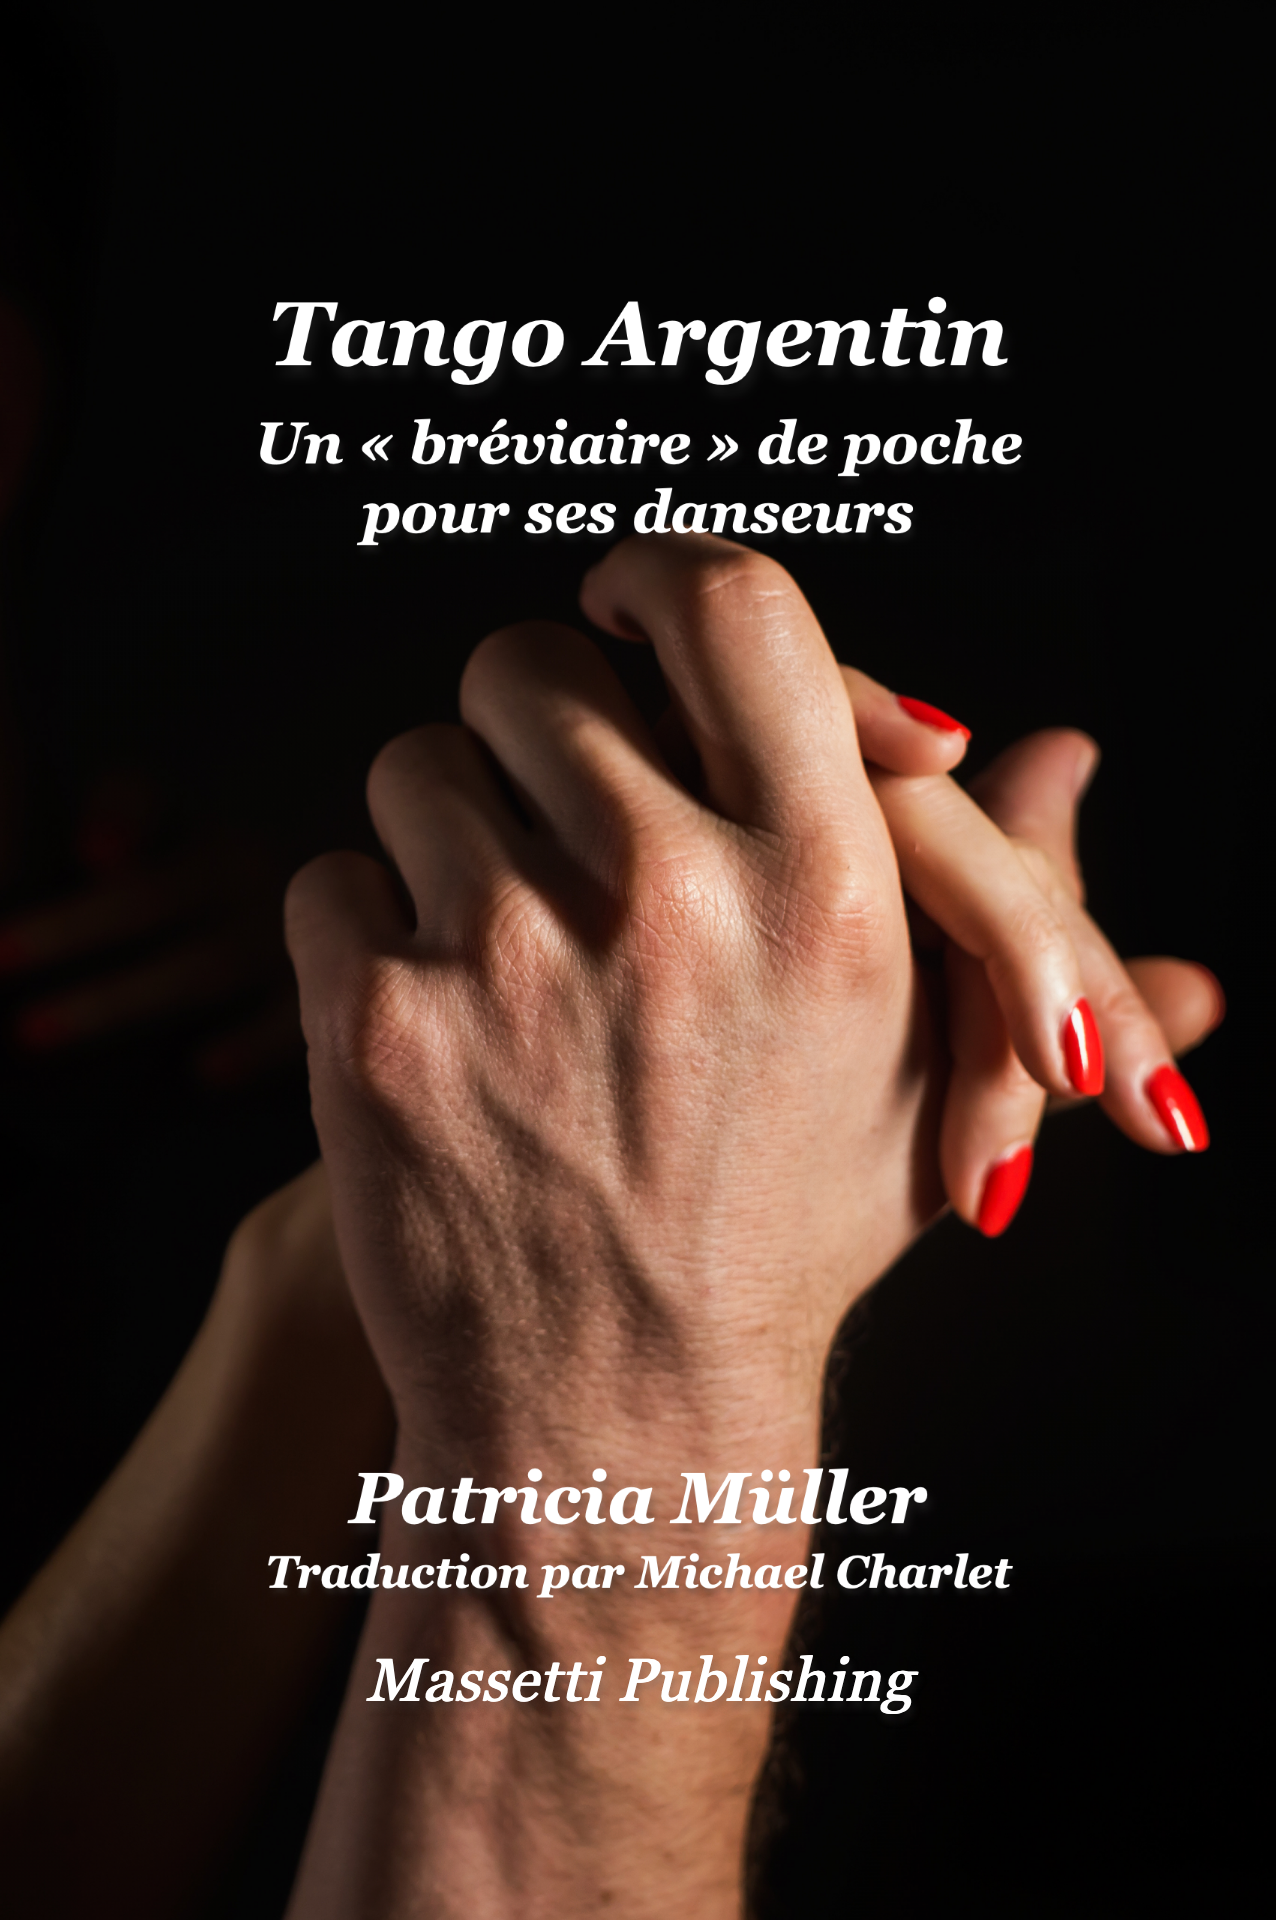 Tango Argentin Un « bréviaire » de poche  pour ses danseurs